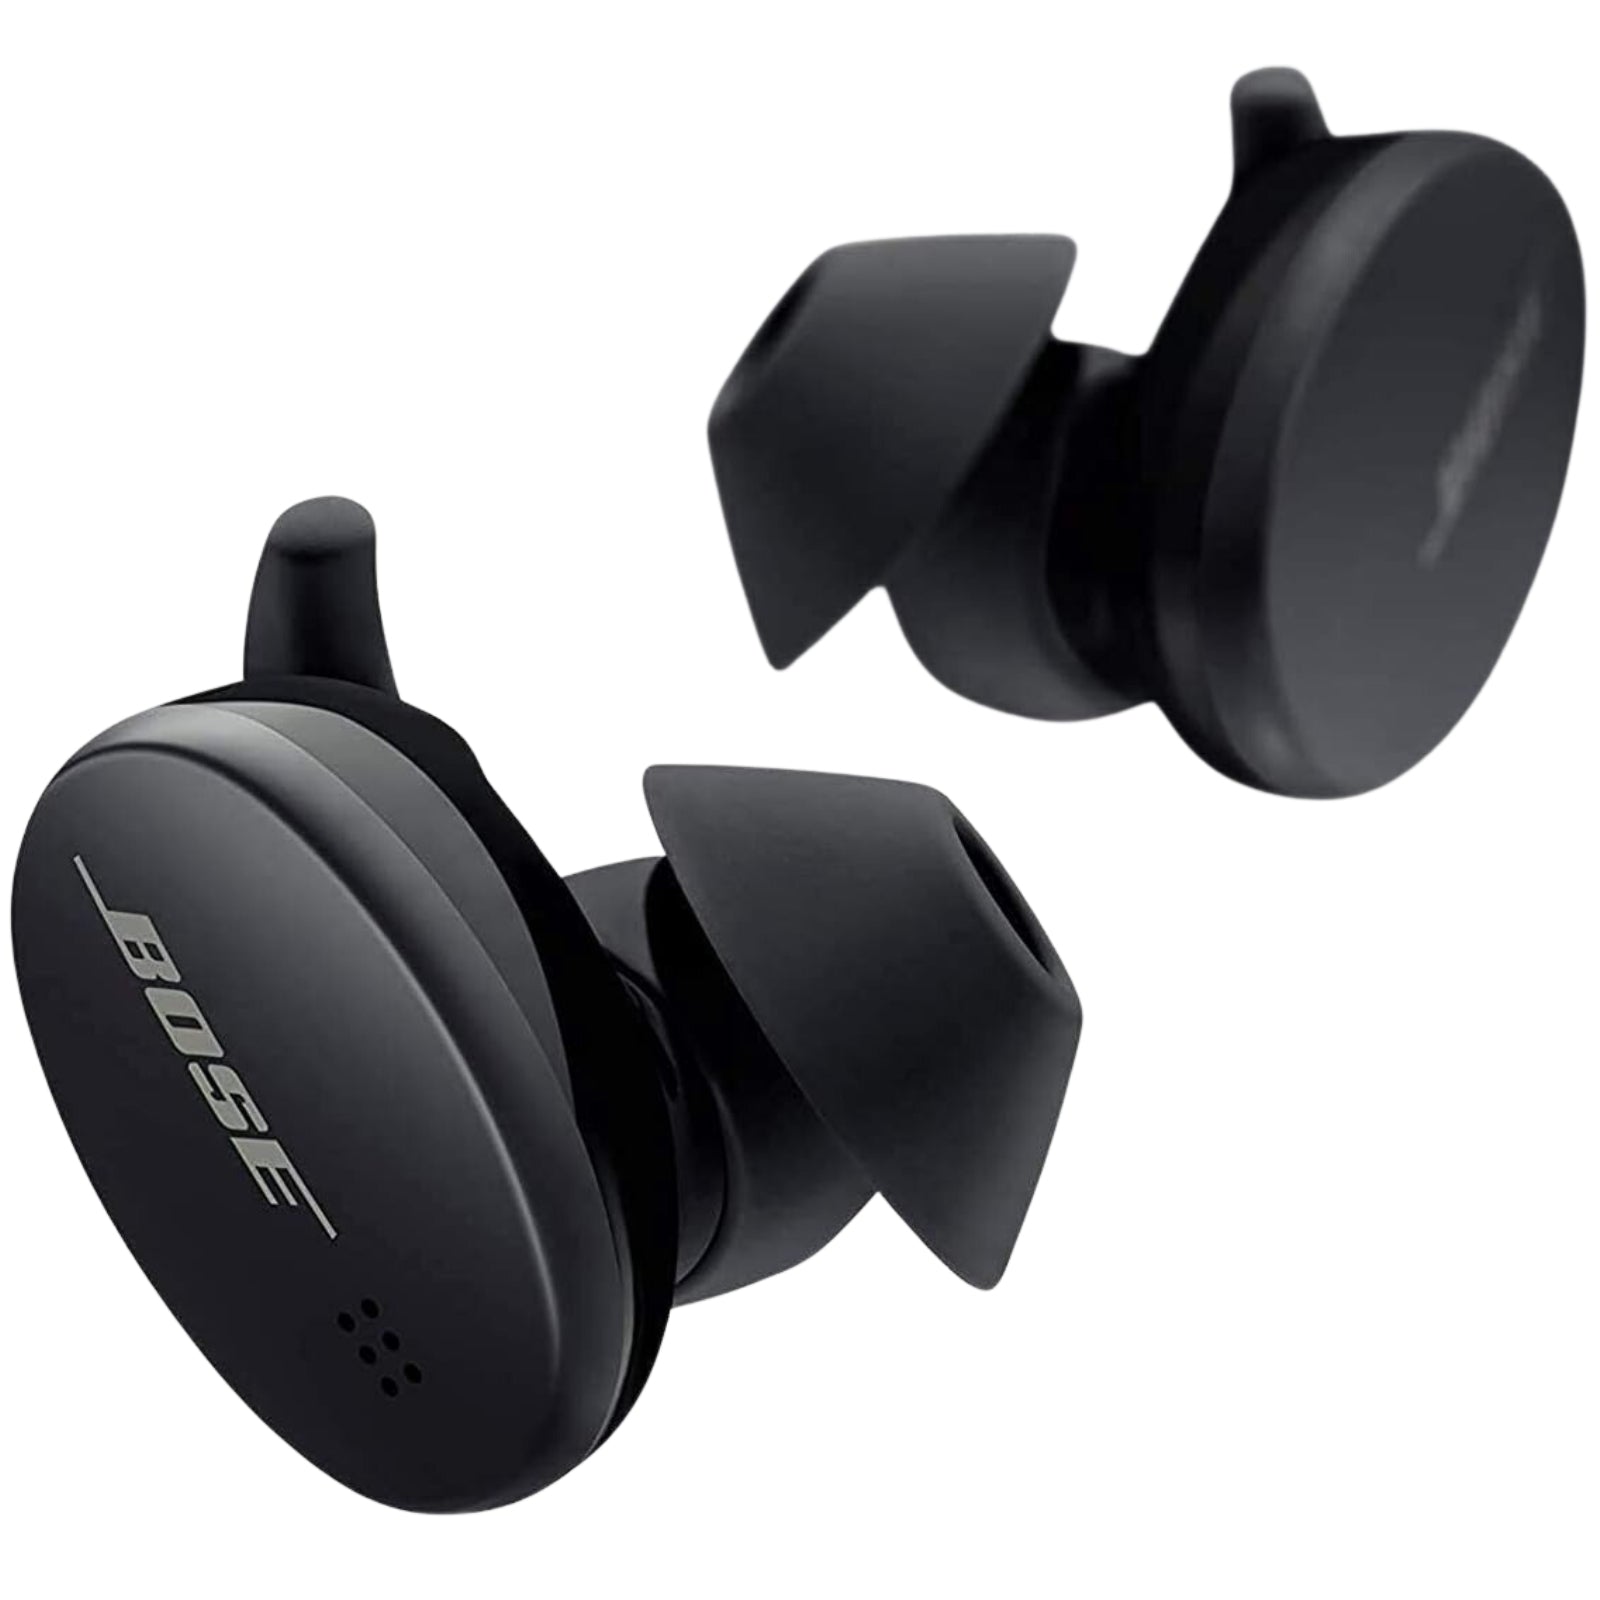 Bose Sport Wireless Earbuds Triple Black - MyMobile